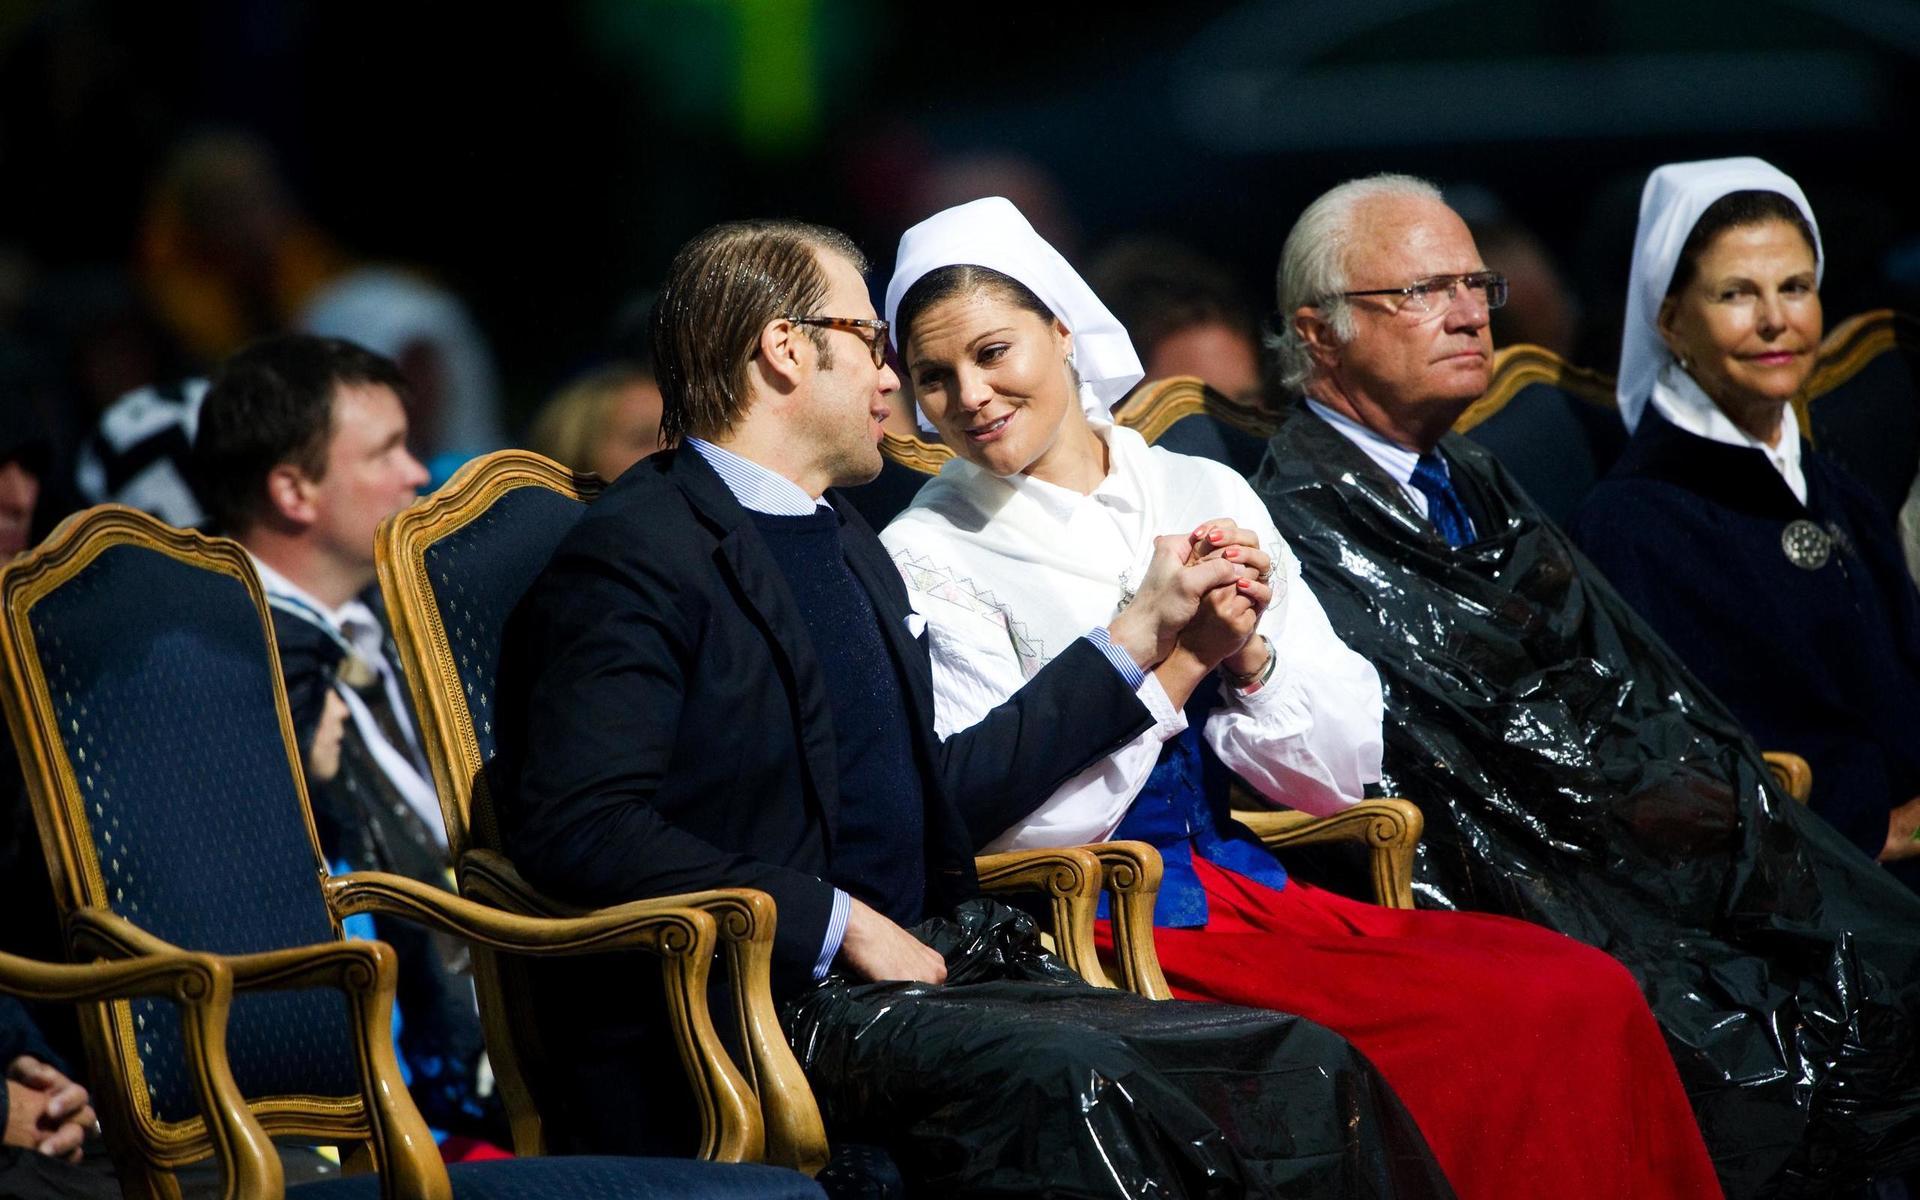 2011 regnade det på kronprinsessan Victorias 34-årsdag när de firade på idrottsplanen i Borgholm. Prins Daniel och  kronprinsessan Victoria verkade ändå trivas i regnet. Kung Carl XVI Gustaf och drottning Silvia var också på plats.